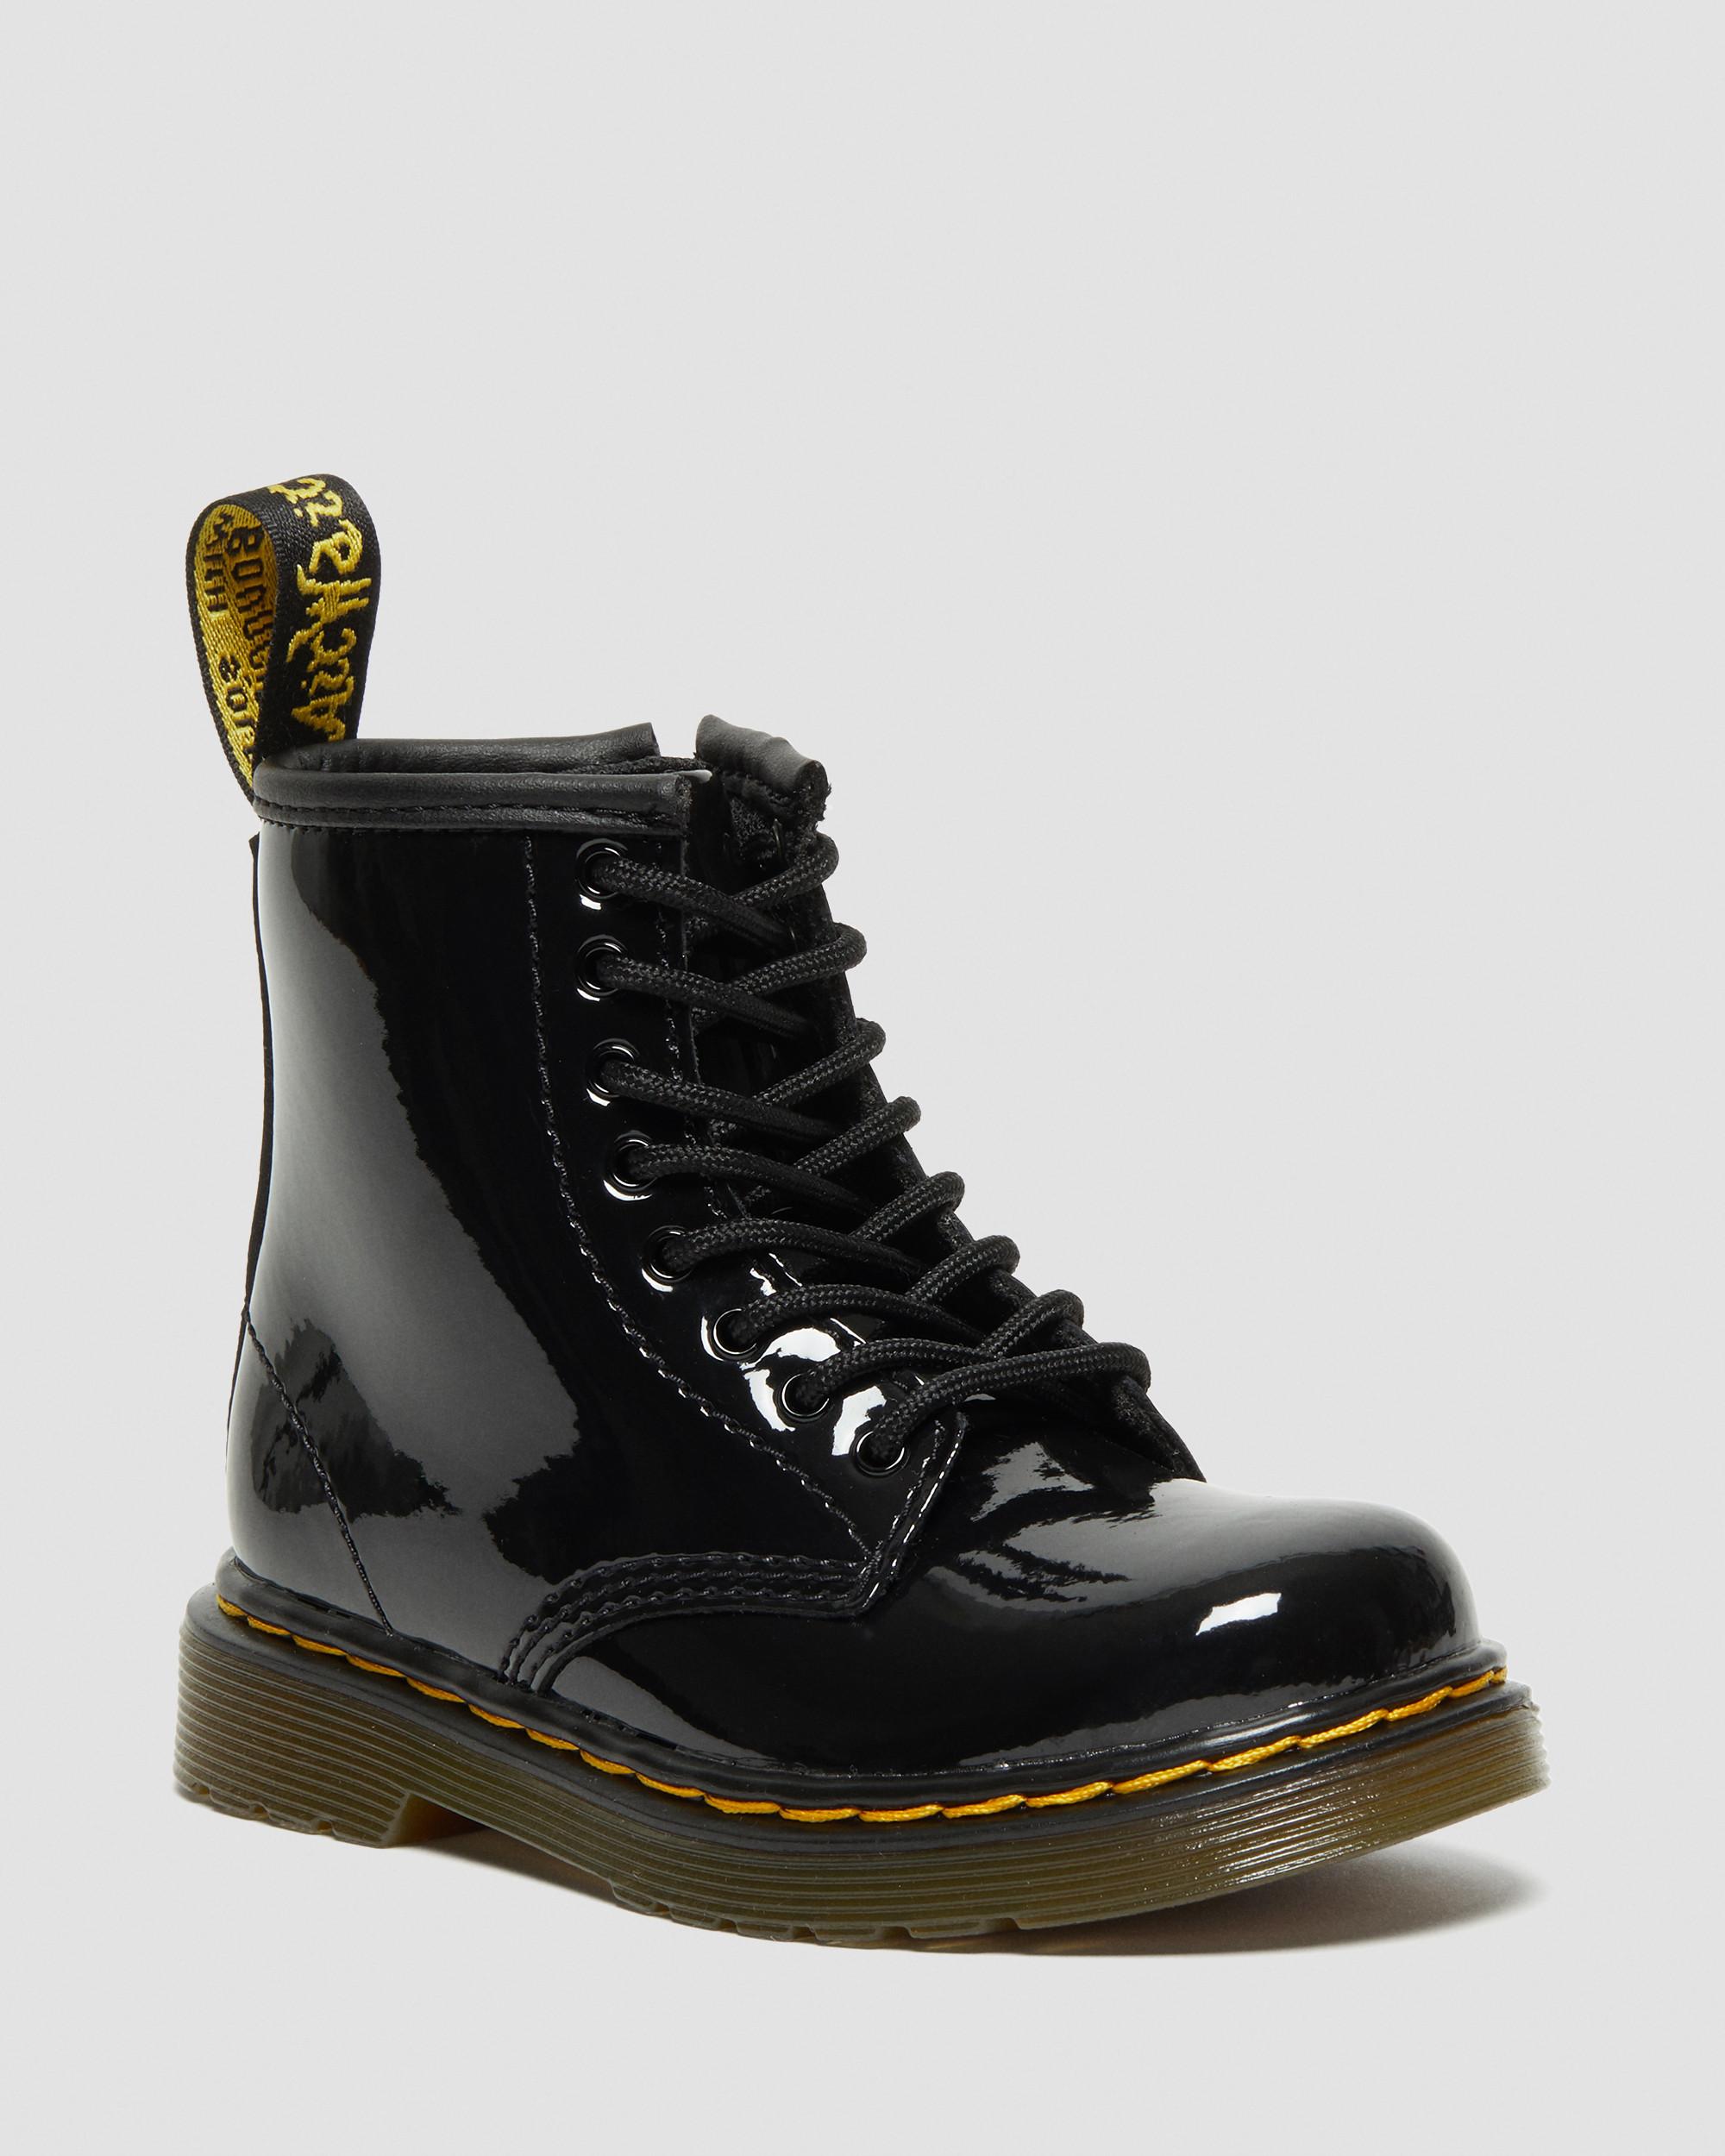 dark martens boots